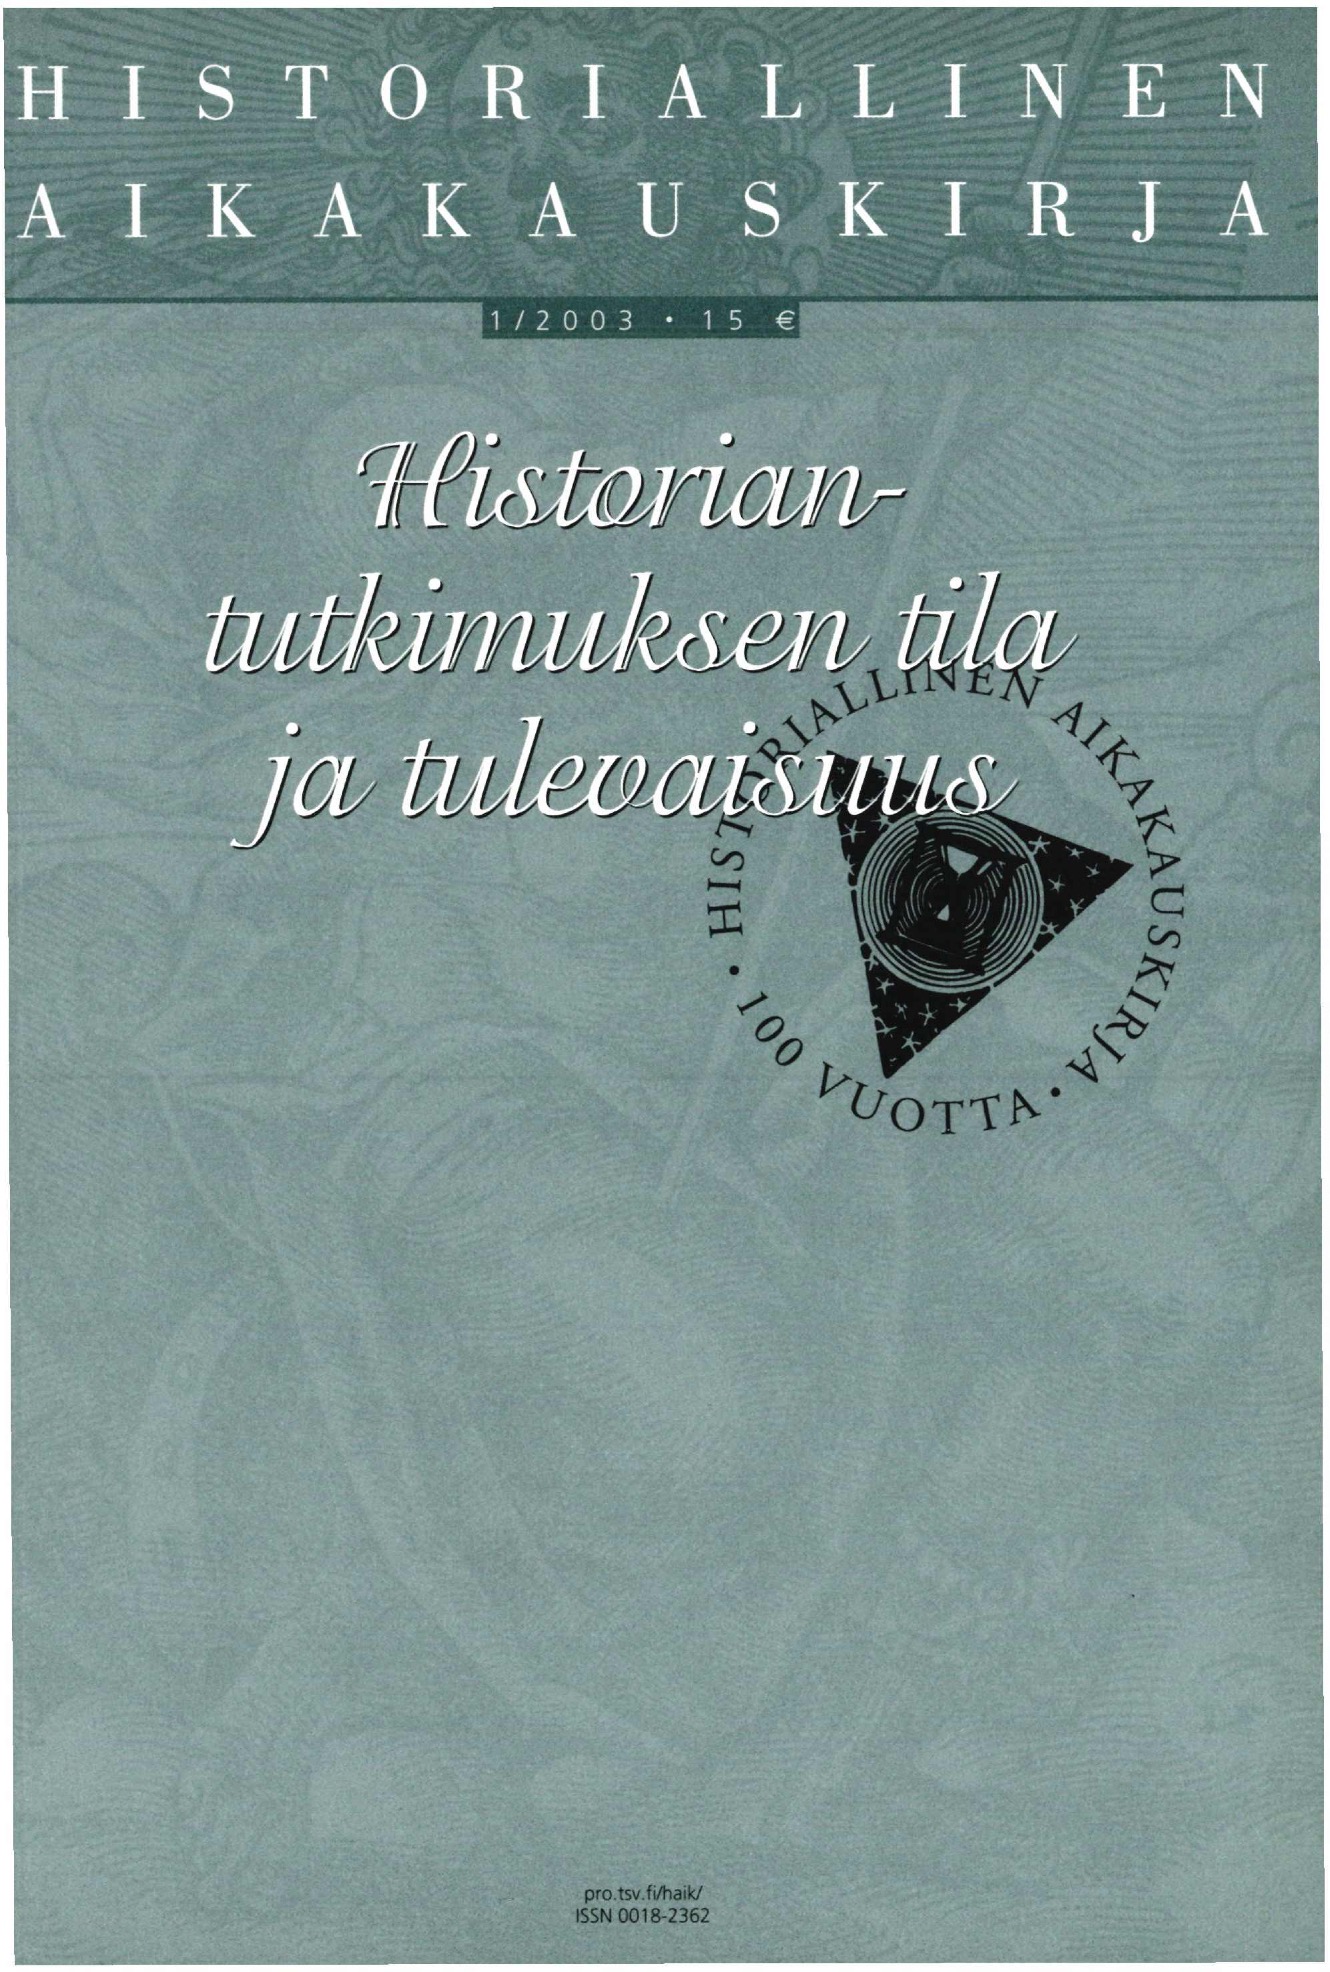 					Visa Vol 101 Nr 1 (2003): Historiallinen Aikakauskirja 1/2003 Historiantutkimuksen tila ja tulevaisuus
				